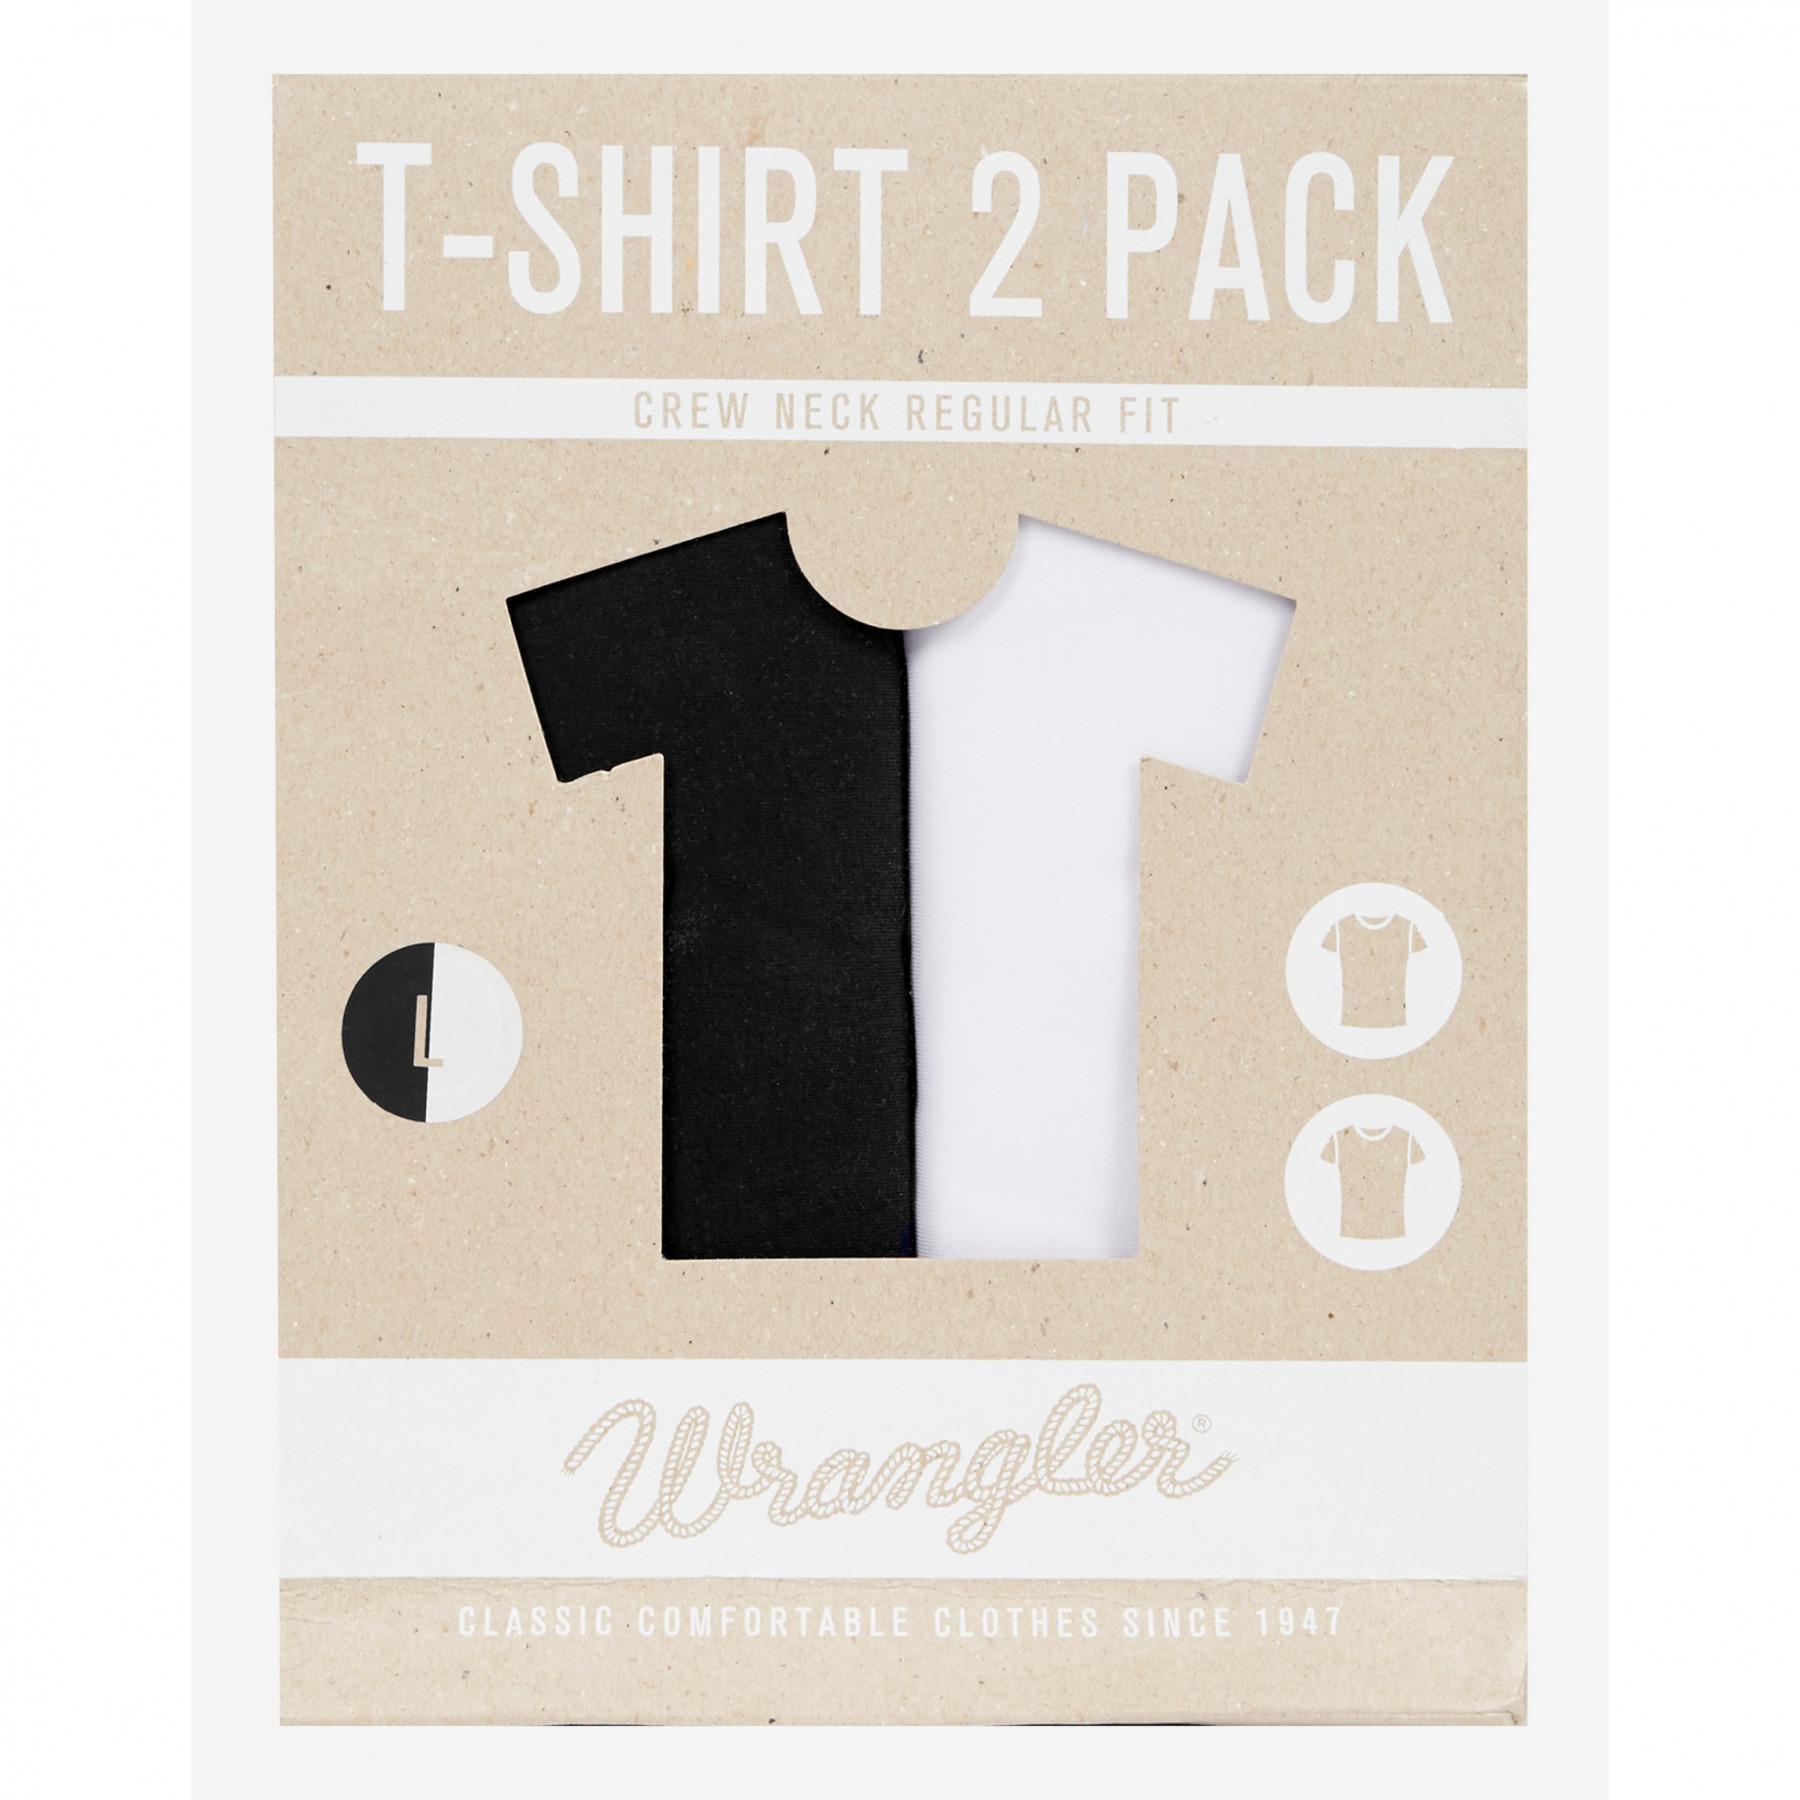 T-shirt met korte mouwen Wrangler (x2)